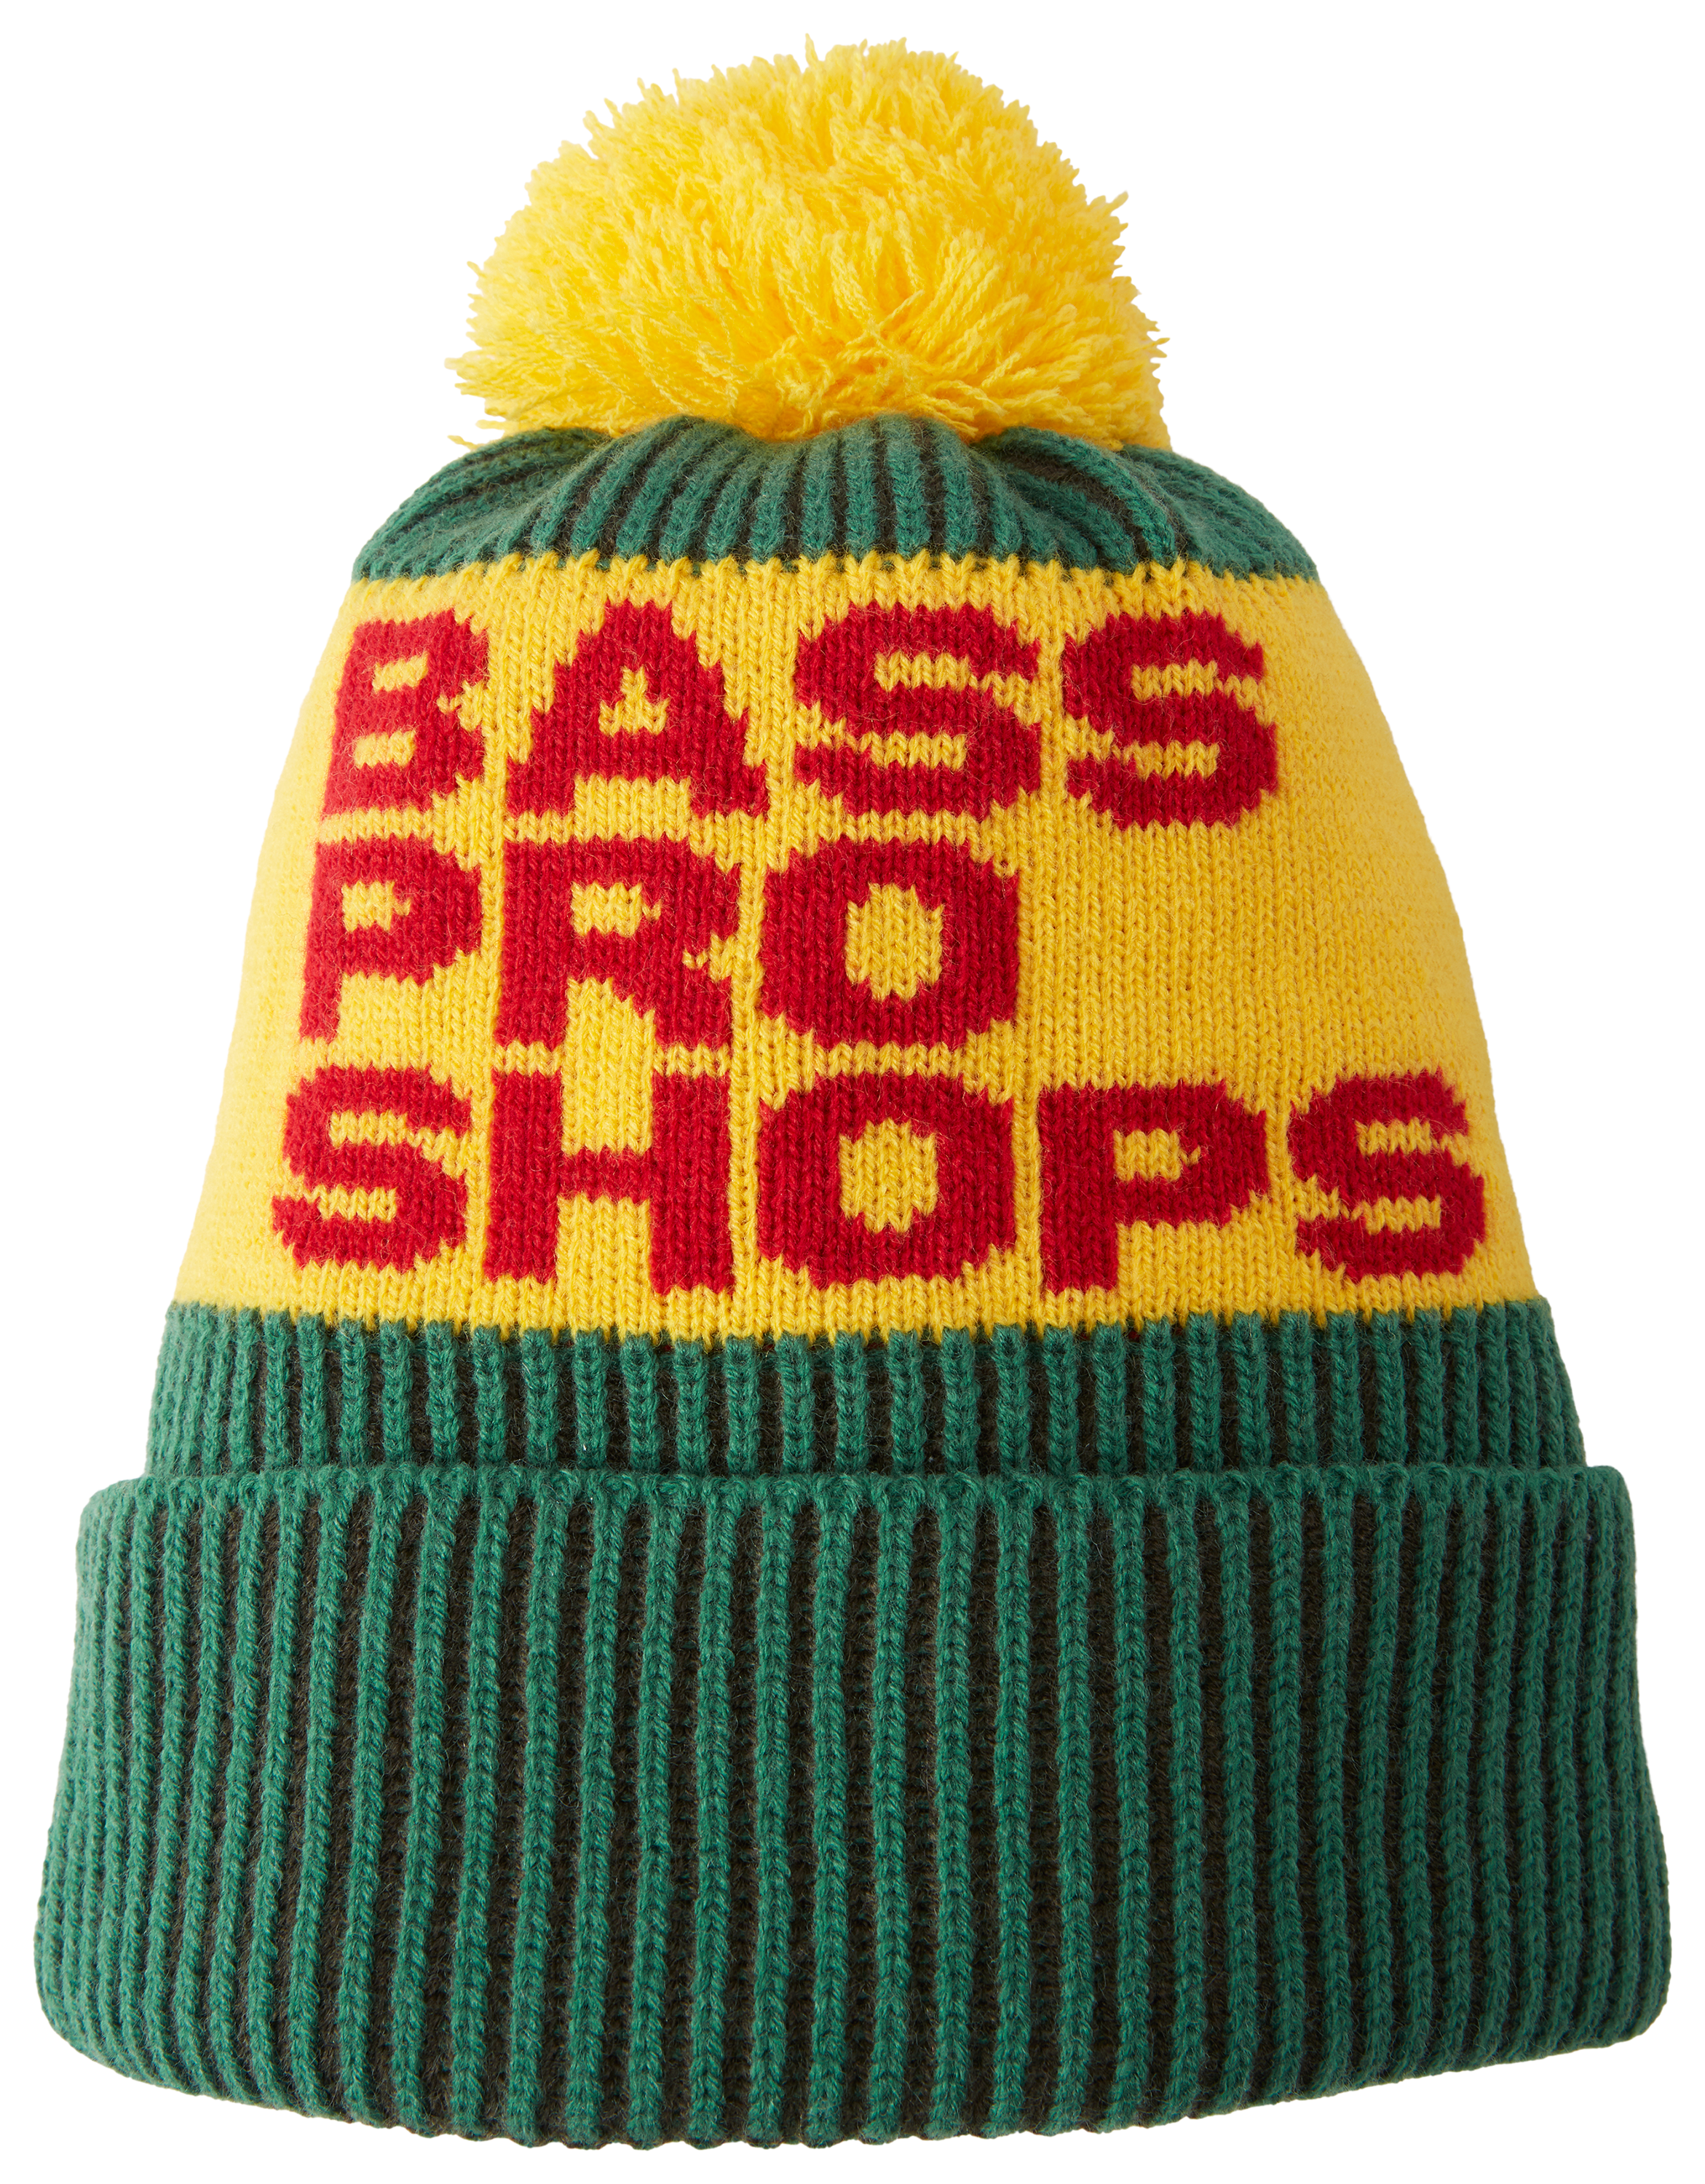 Bass Pro Shop Beanie Winter Warm Knitted Hat Cap Soft Women Men Unisex Cool